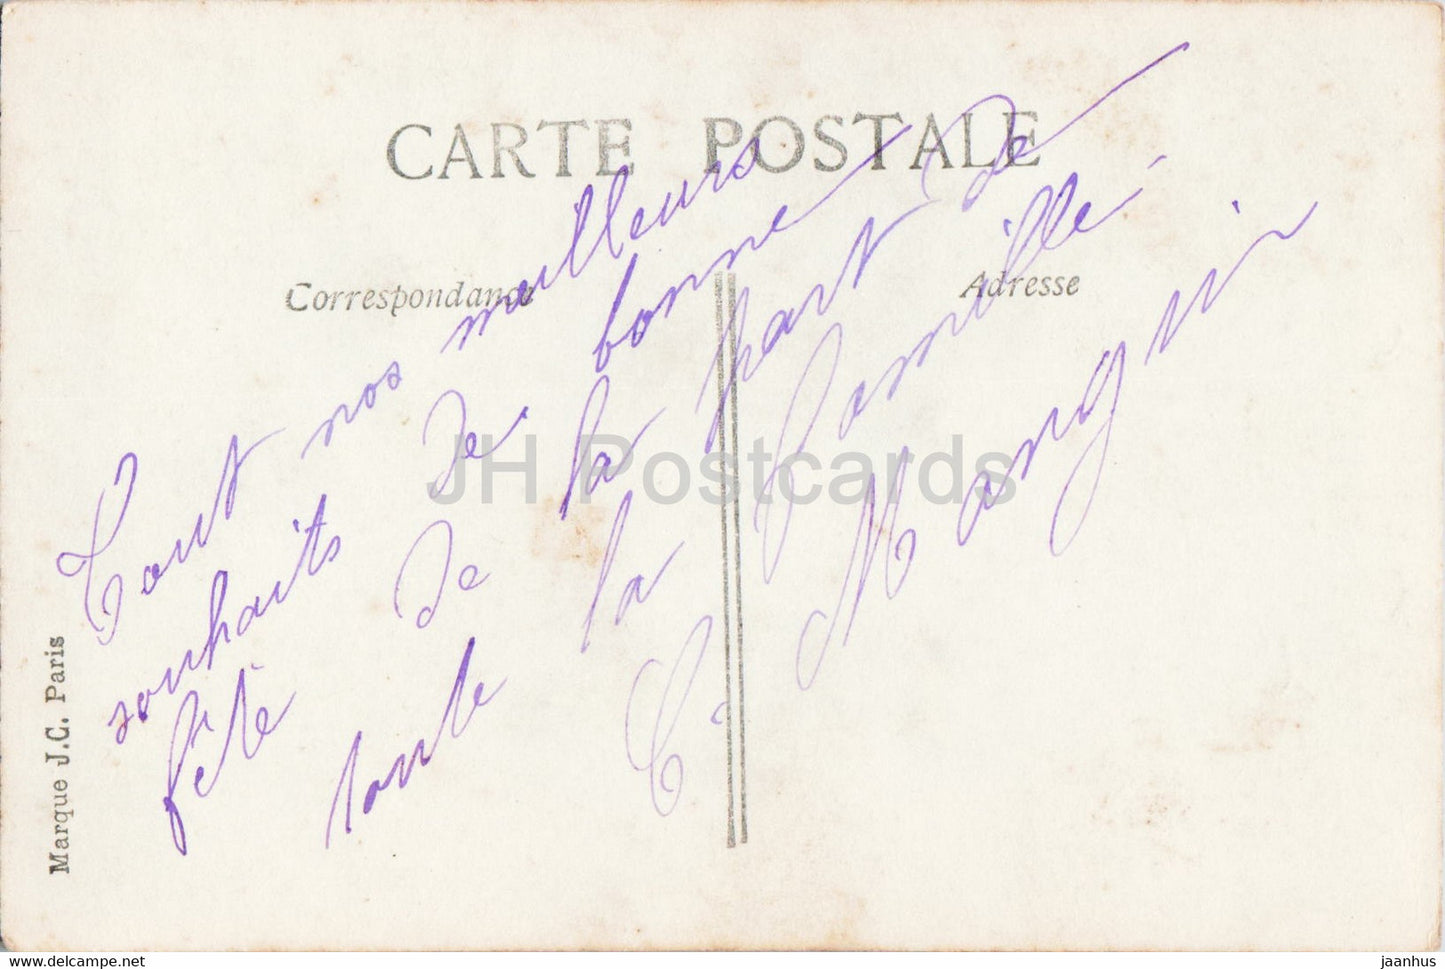 Carte de voeux de Pâques - Joyeuse Fete - homme - 2180 - JC Paris - carte postale ancienne - France - occasion